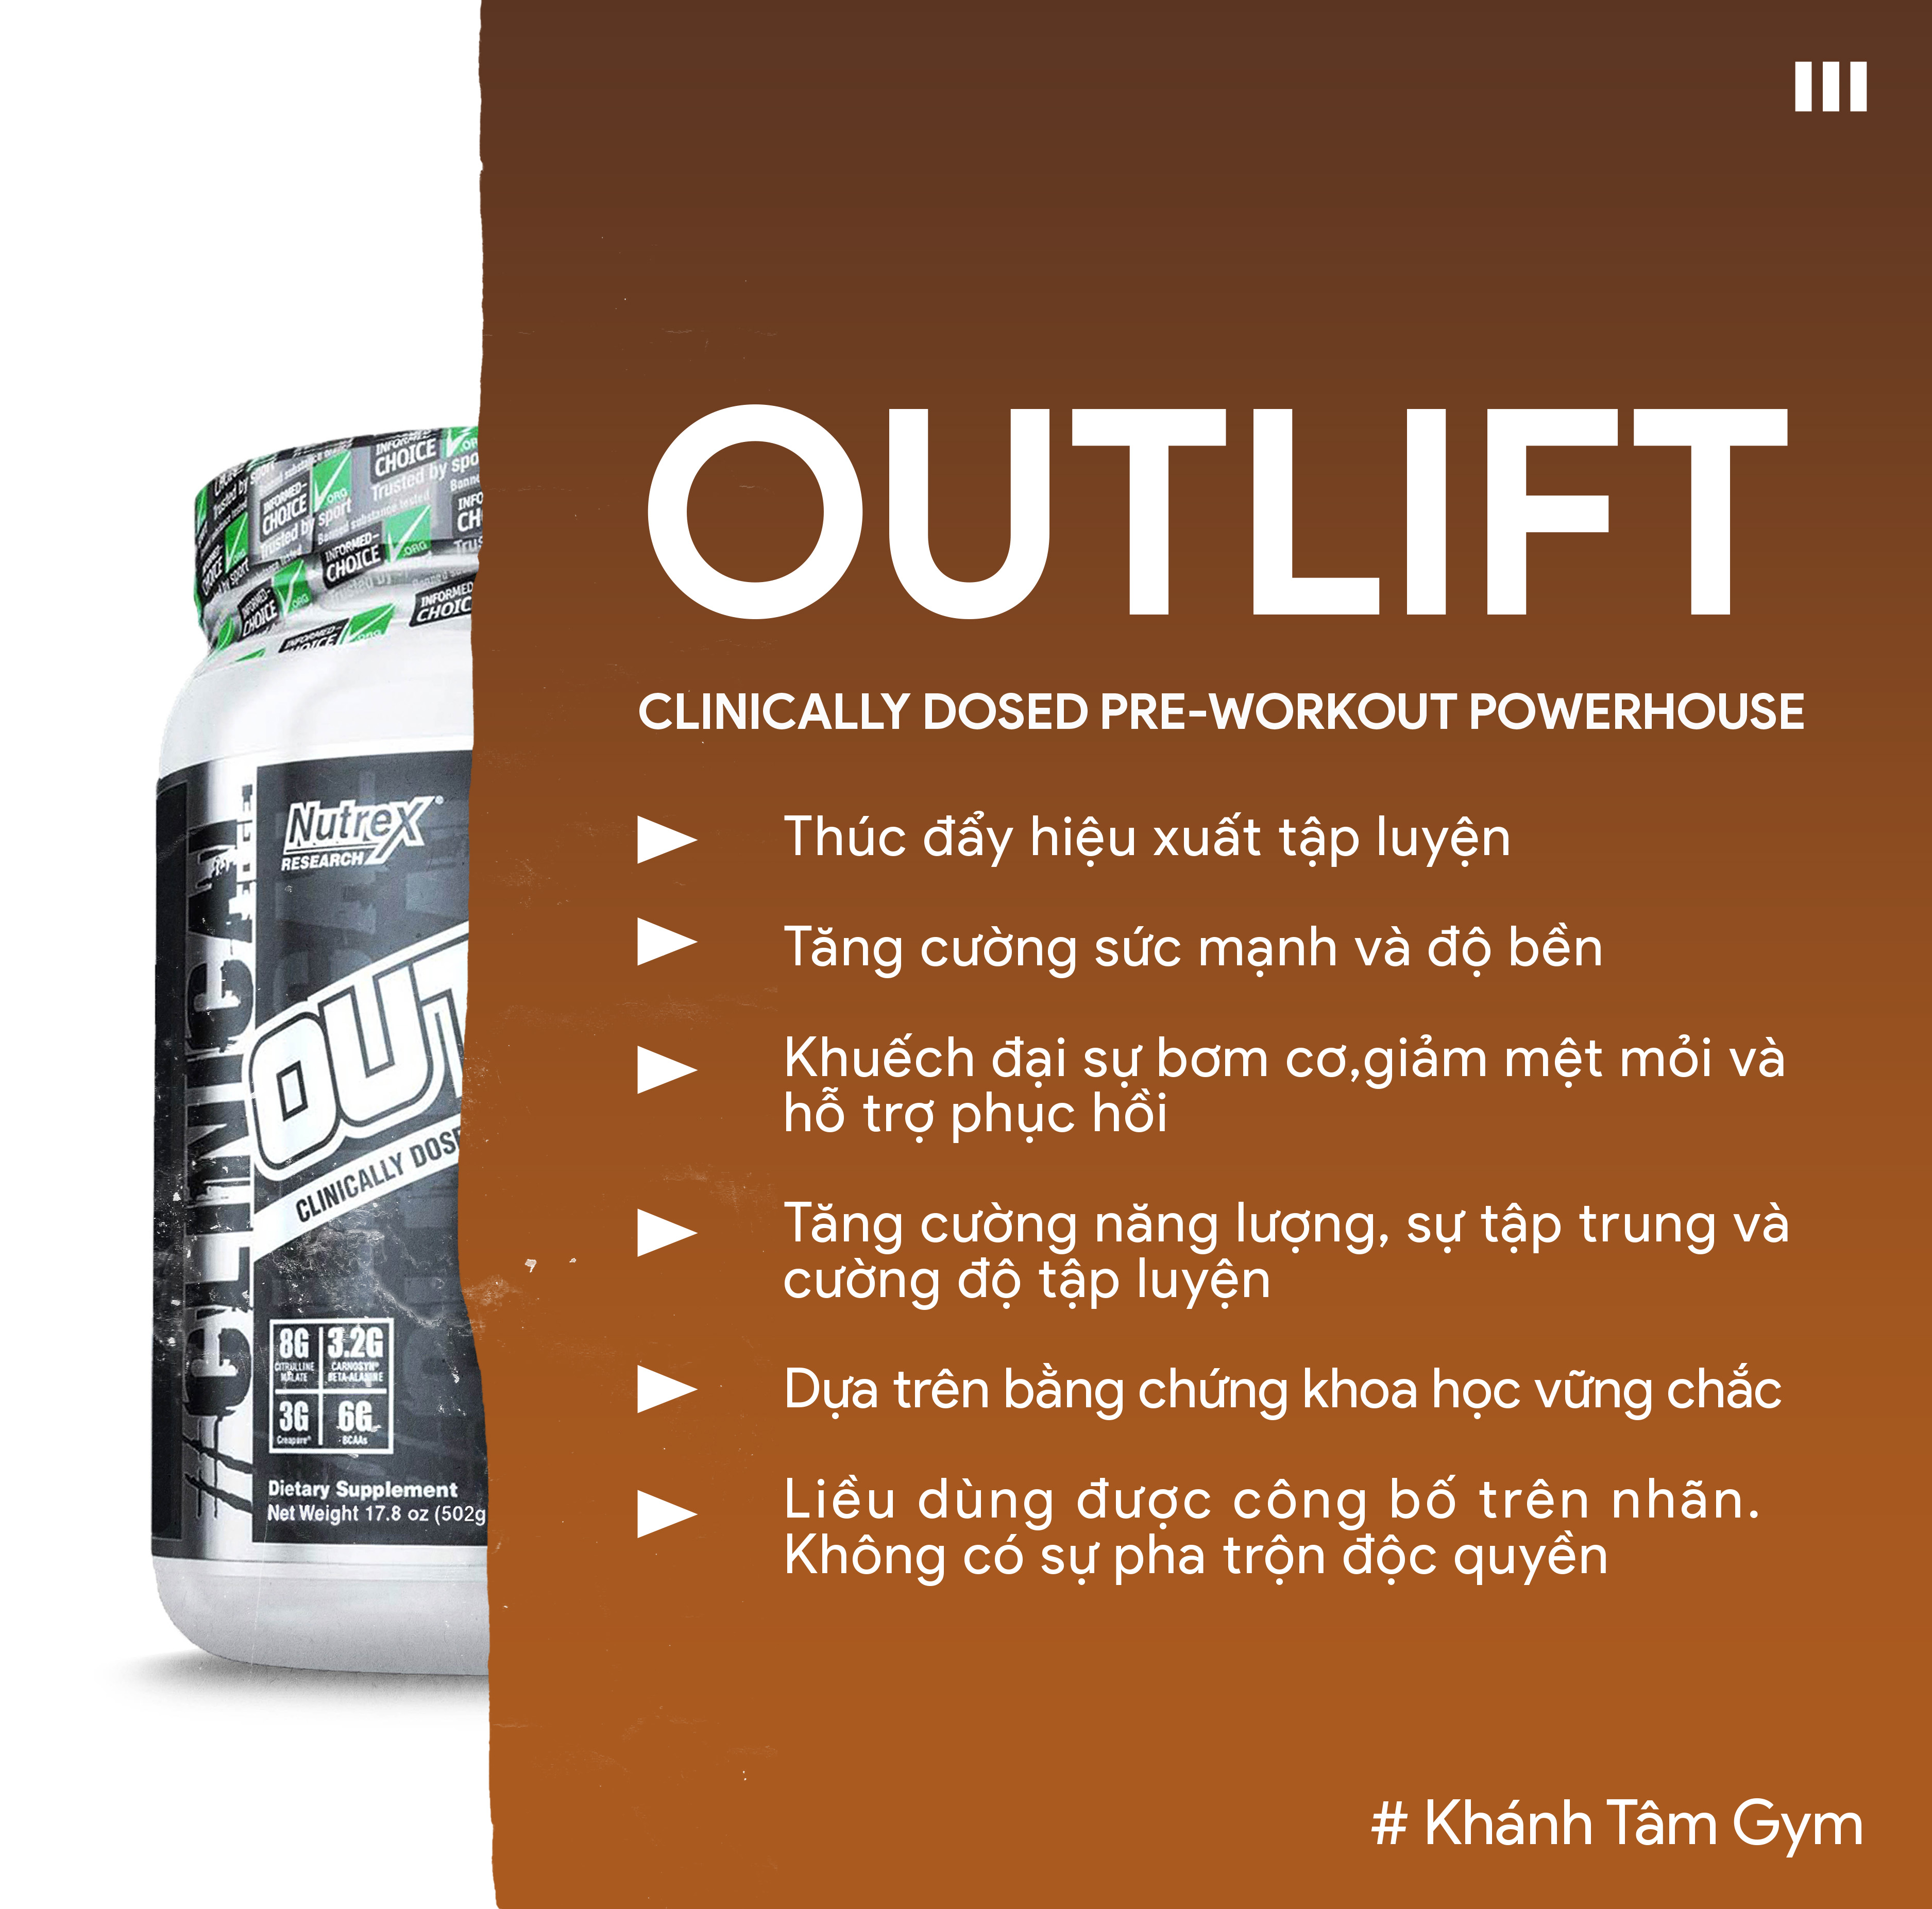 Tăng sức mạnh & Sức bền - Pre-Workout Outlift từ Nuttrex - 20 Liều dùng - Hỗ trợ tập luyện, Tăng năng lượng trước tập, Citrulline, BCAA, Creatine, Beta-Alanine, Taurine